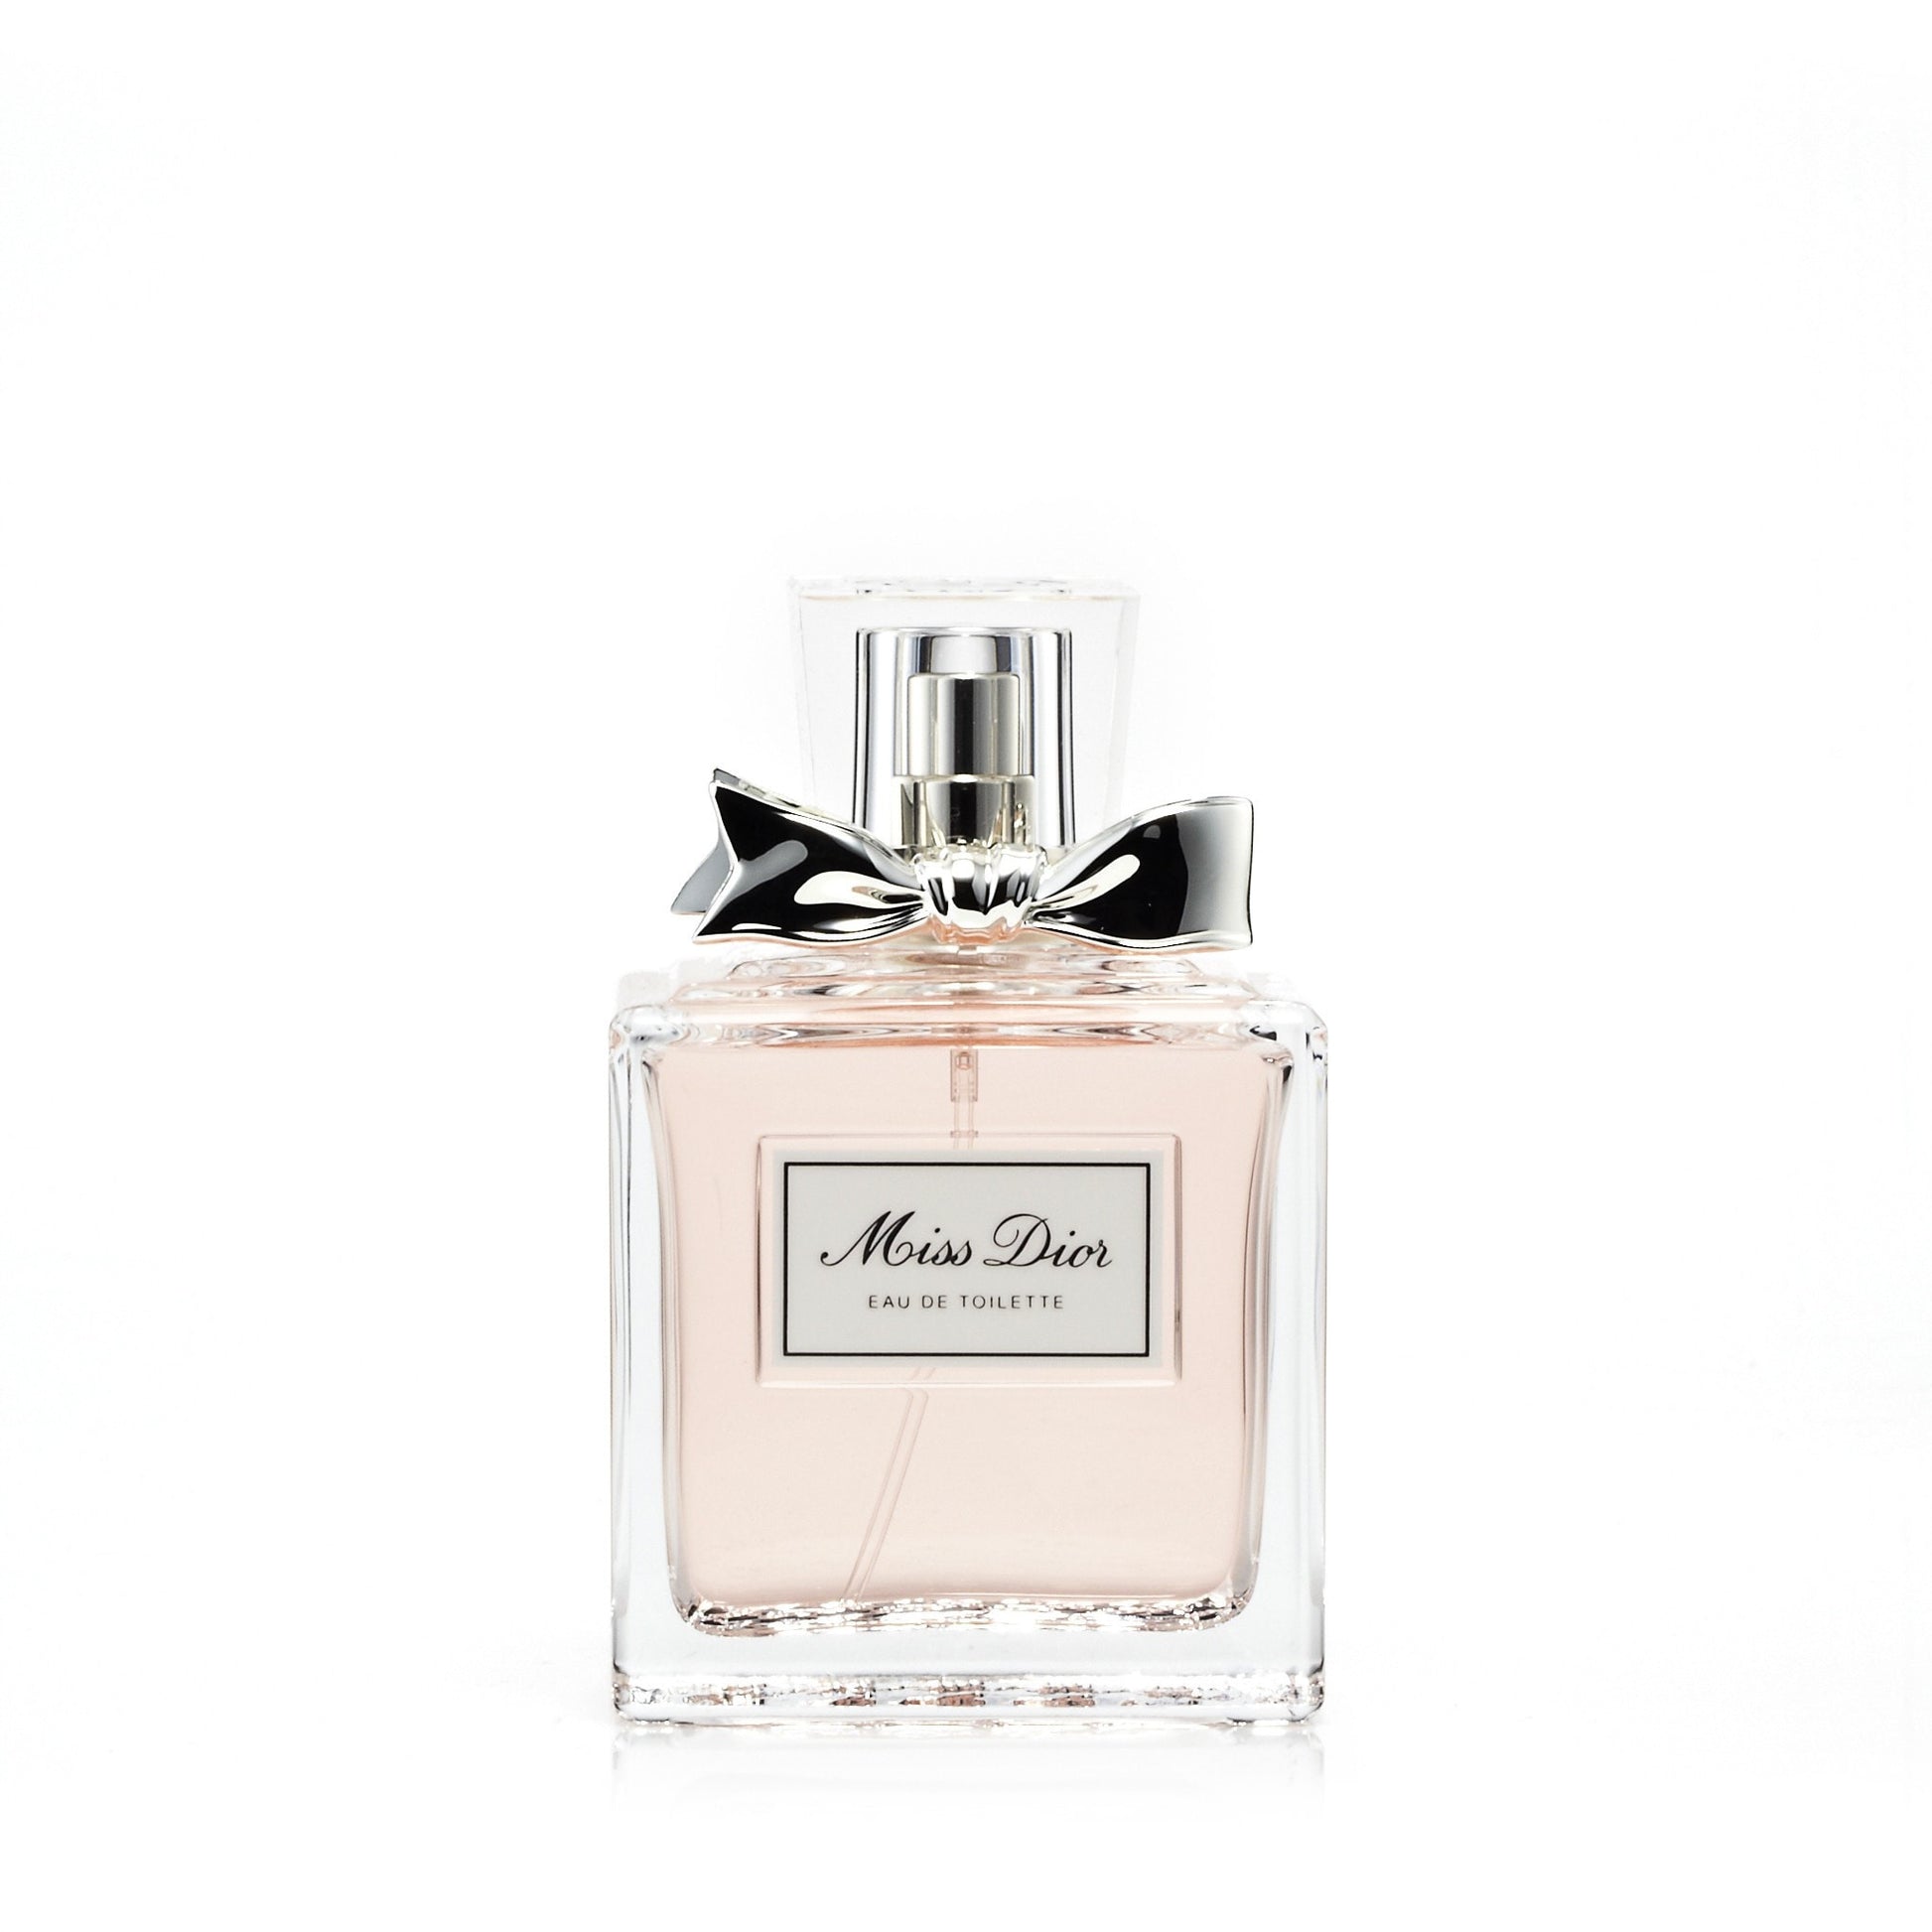 Miss Dior Cherie 3.4 Fl Oz/100ml Eau de Parfum 2011 Original Perfume  Authentic